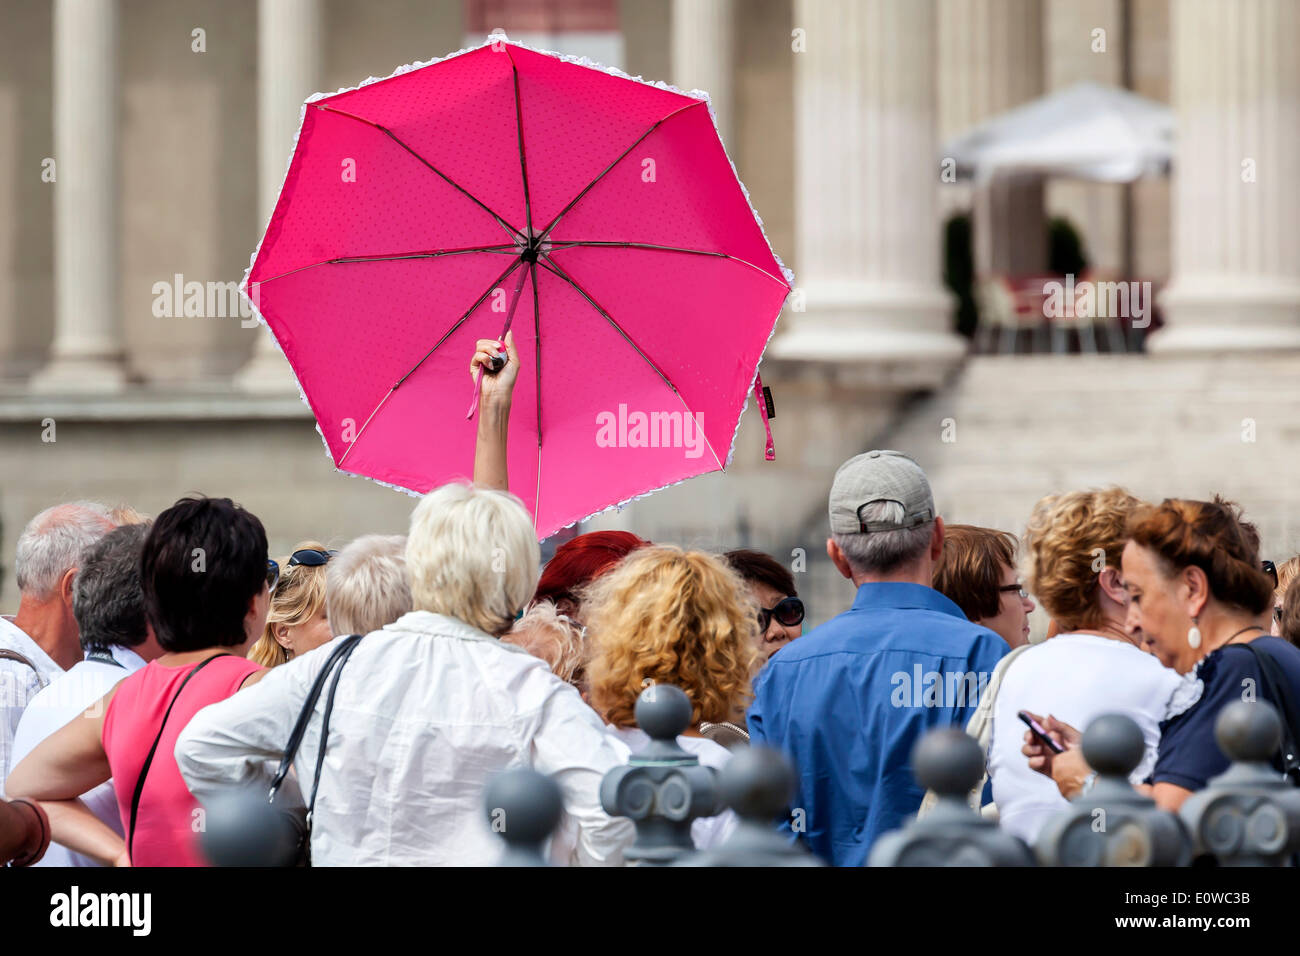 Gruppe von Touristen mit einem Reiseführer hält einen rosa Regenschirm, Budapest, Ungarn Stockfoto